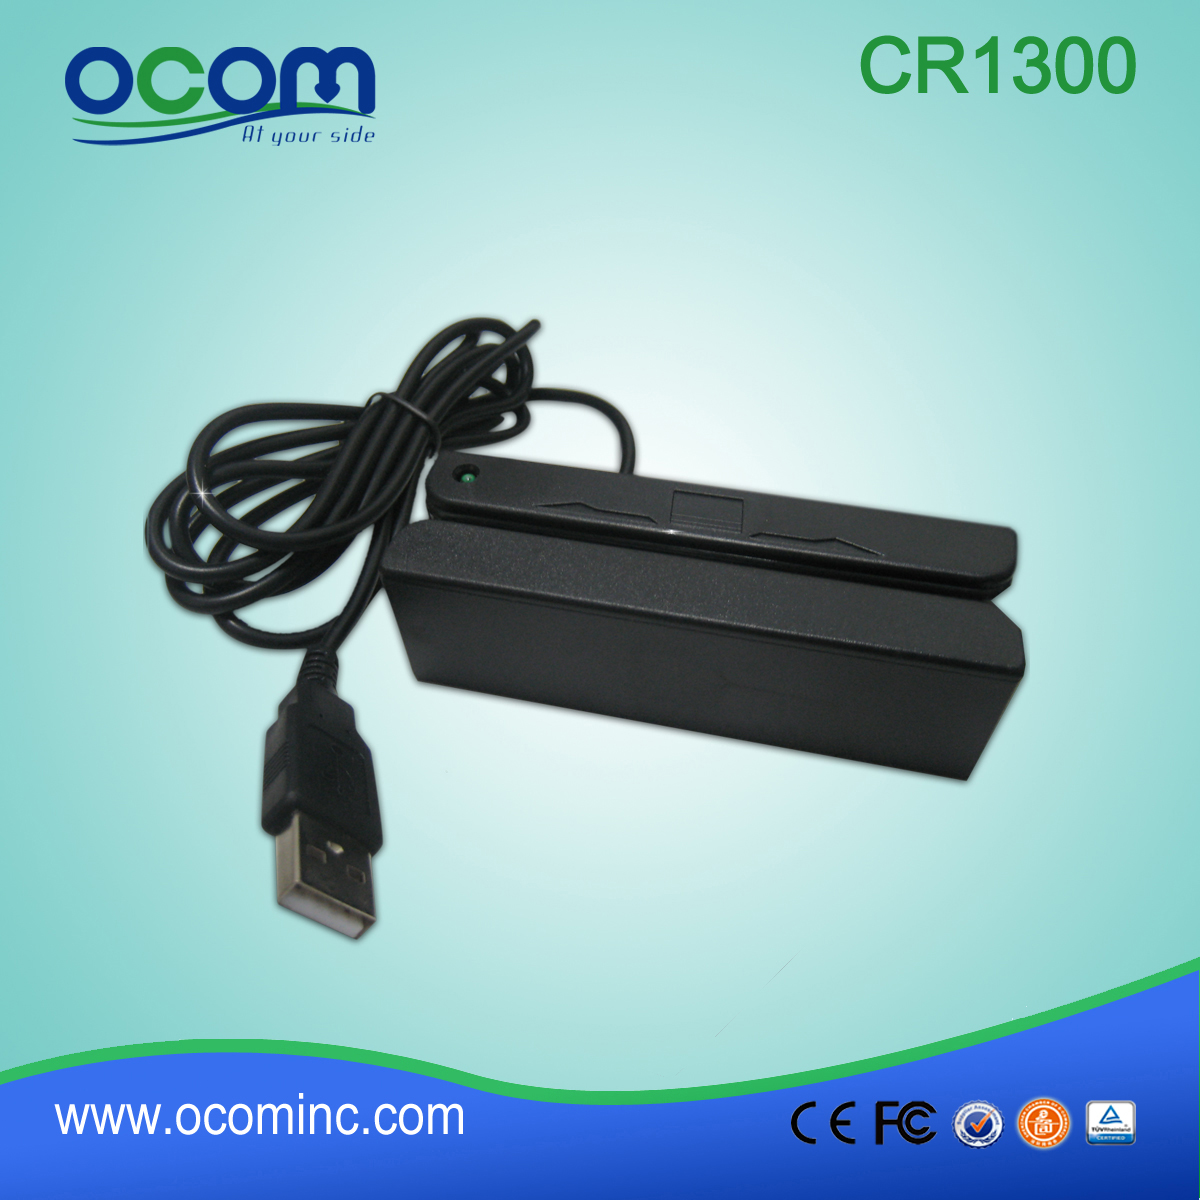 CR1300 czytnik kart magnetycznych OCOM do śledzenia GPS